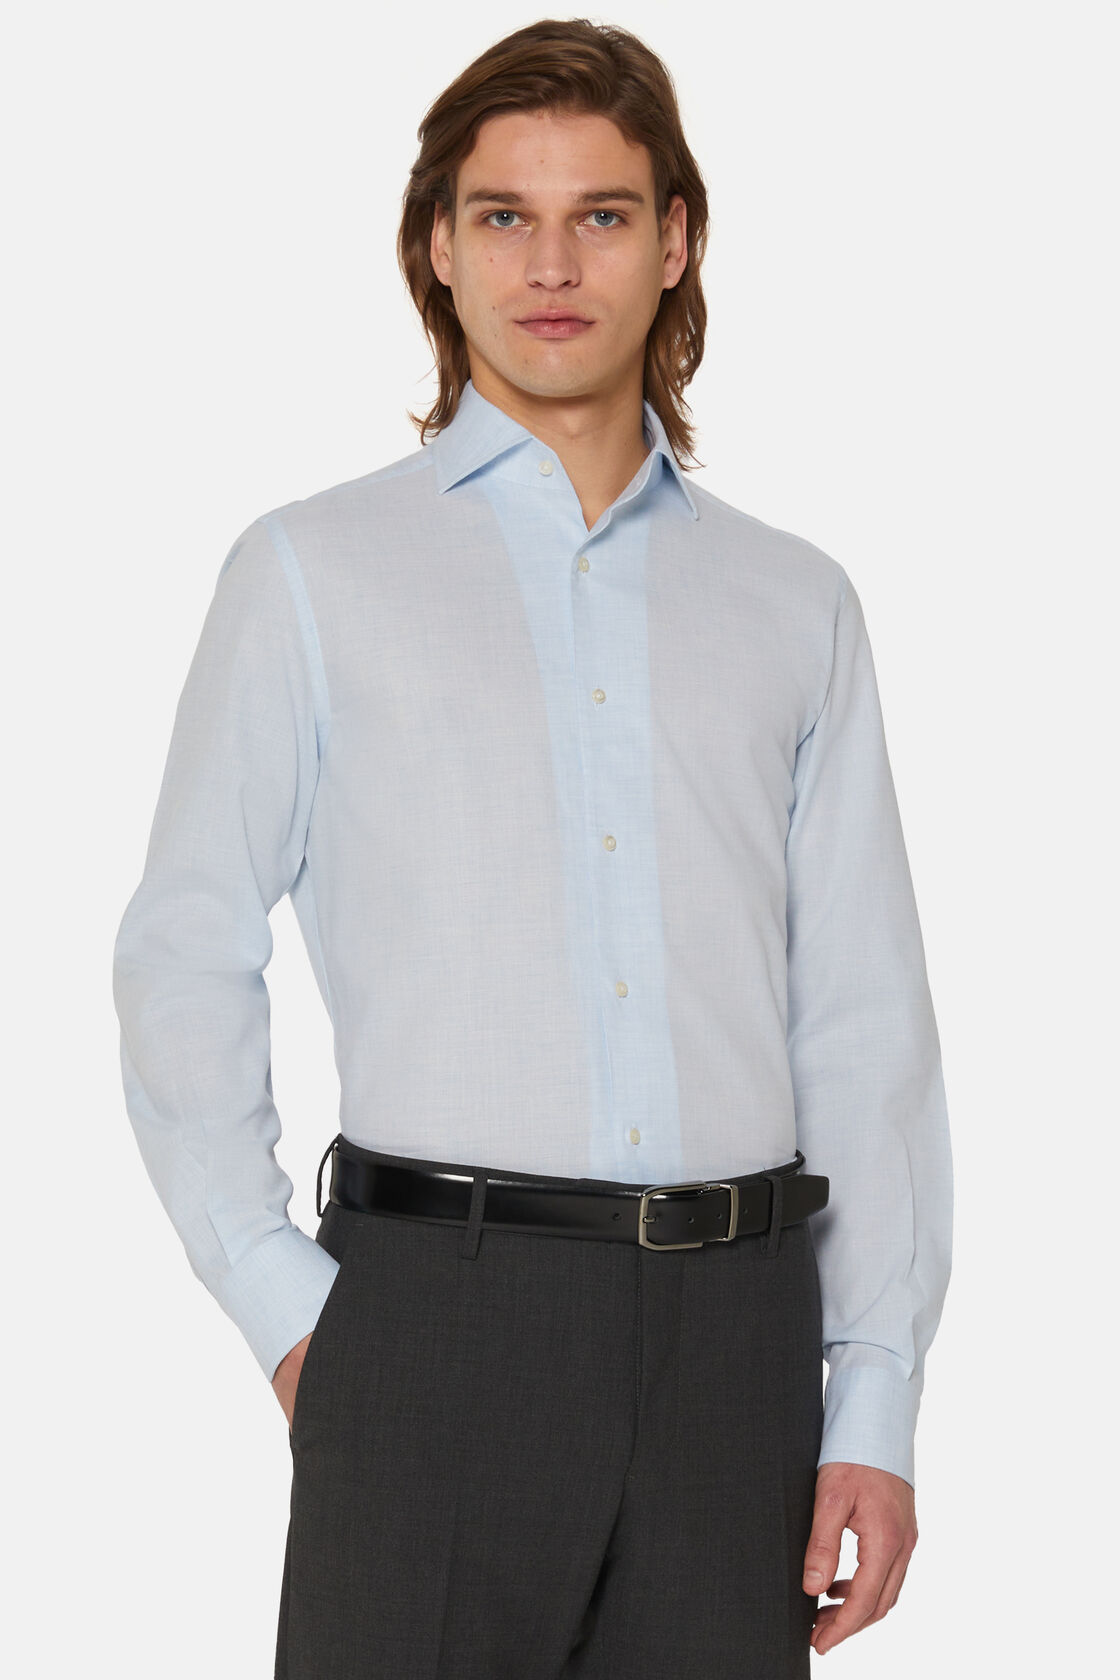 Γαλάζιο πουκάμισο από βαμβακερό ύφασμα dobby με κανονική εφαρμογή, Light Blue, hi-res